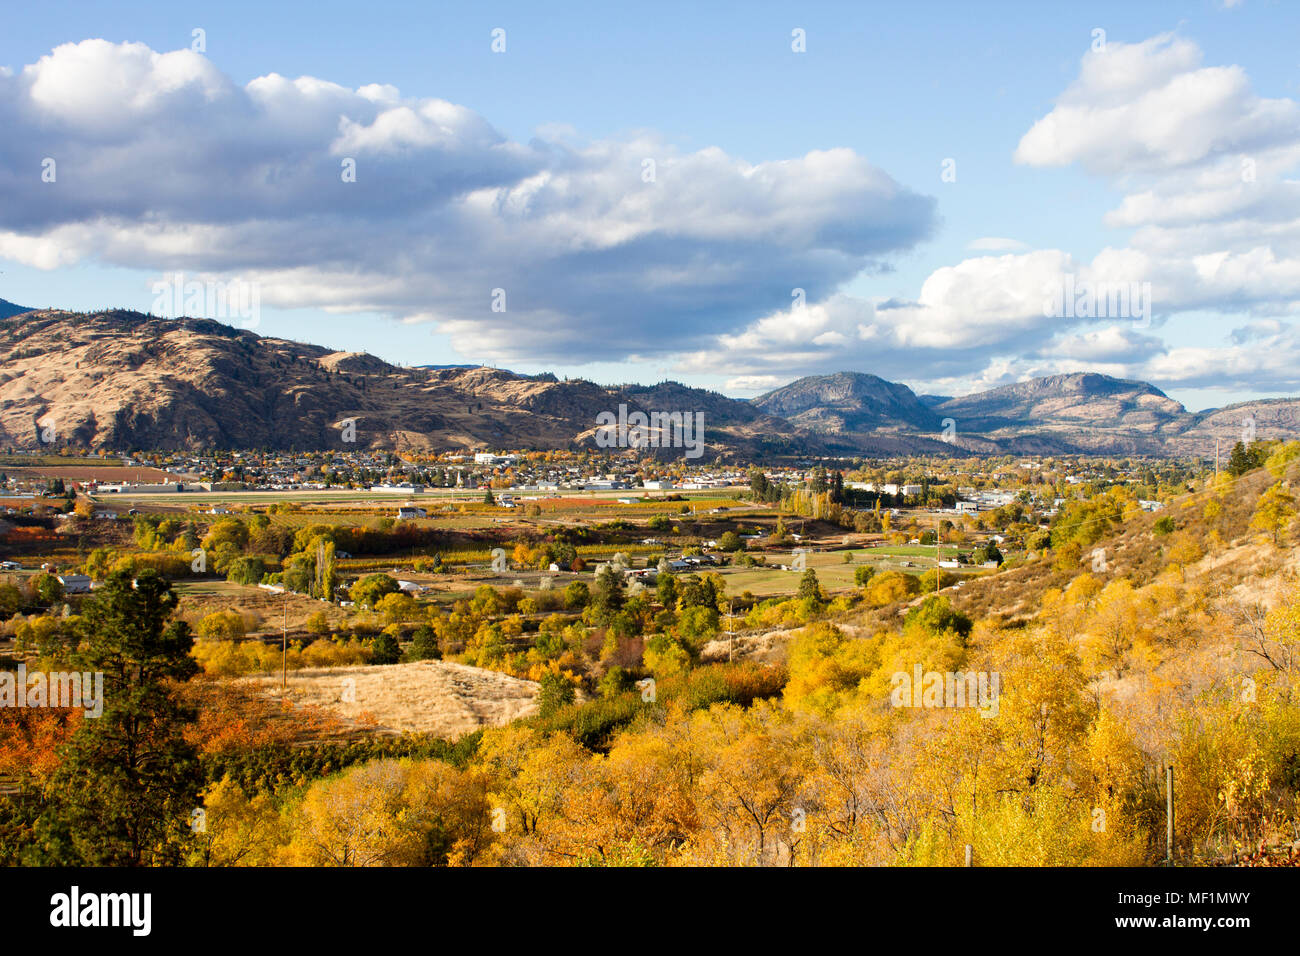 Vue panoramique de l'automne du paysage rural de Oliver situé dans la vallée de l'Okanagan en Colombie-Britannique, Canada. Banque D'Images